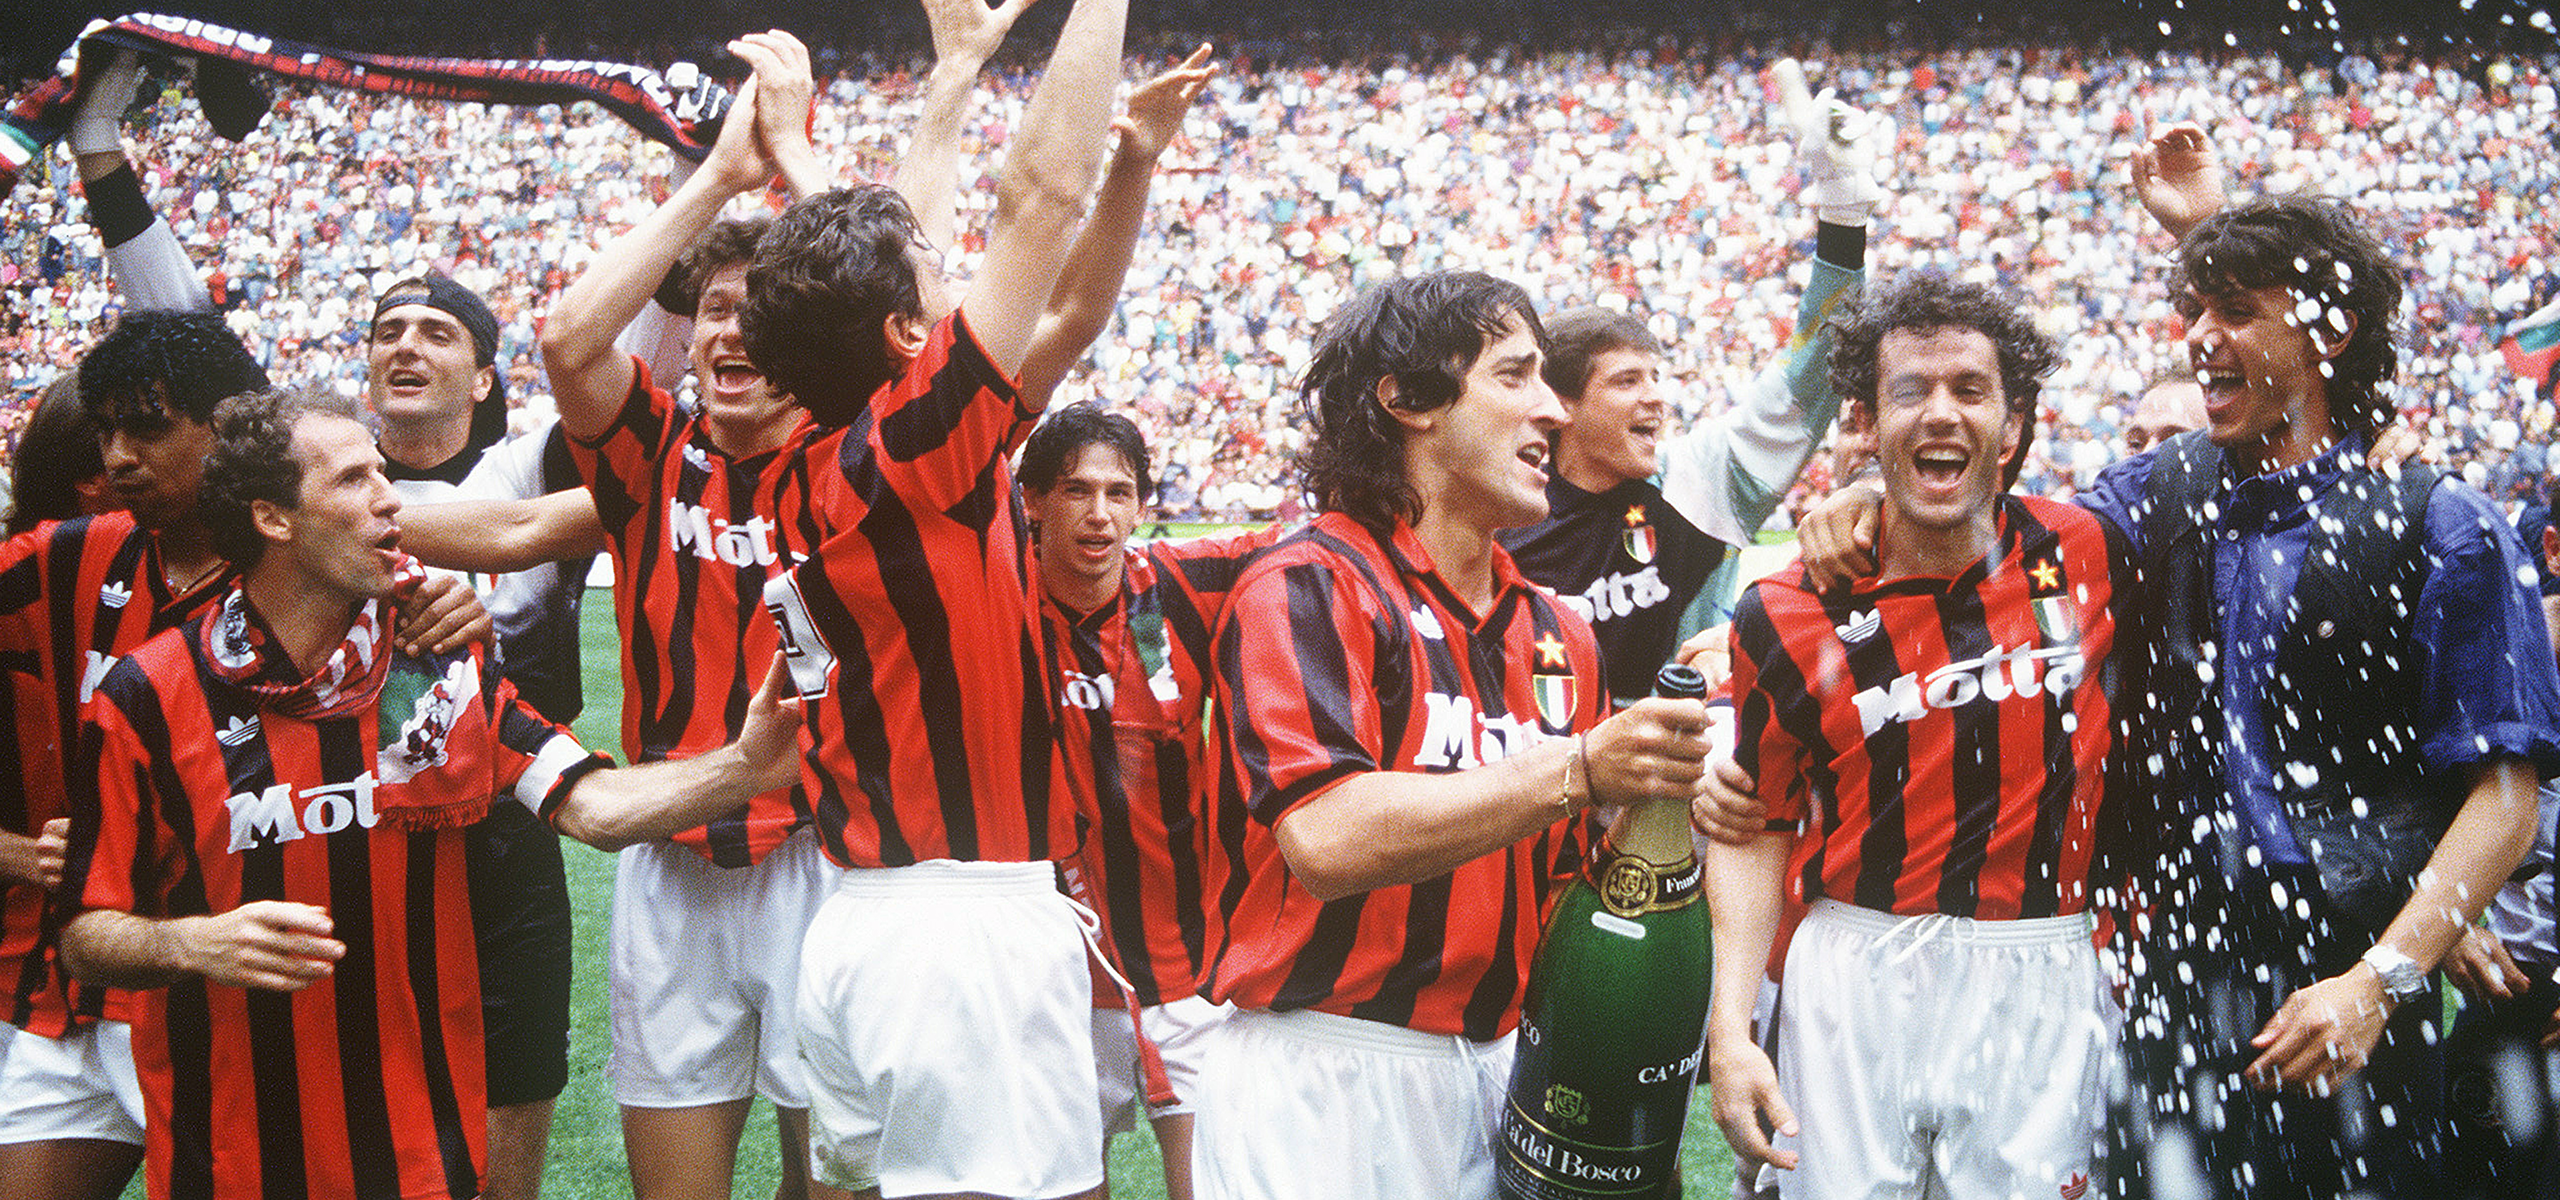 Серия А 1990-х и 2000-х годов. Когда Батистута, Дель Пьеро и Баджо были на футбольном олимпе. Часть 1